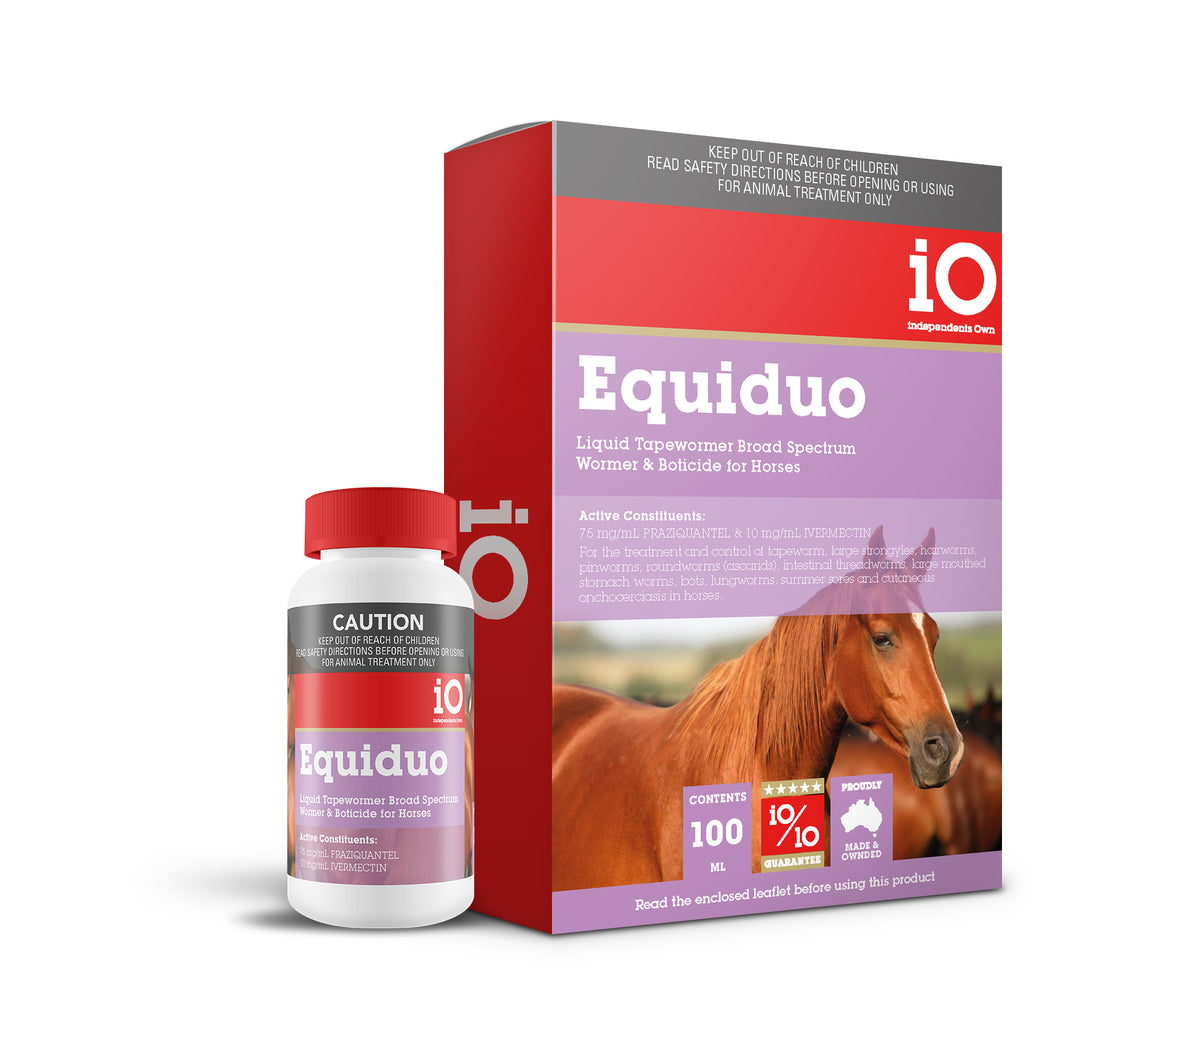 EQUIDUO LIQUID WORMER FOR HORSES